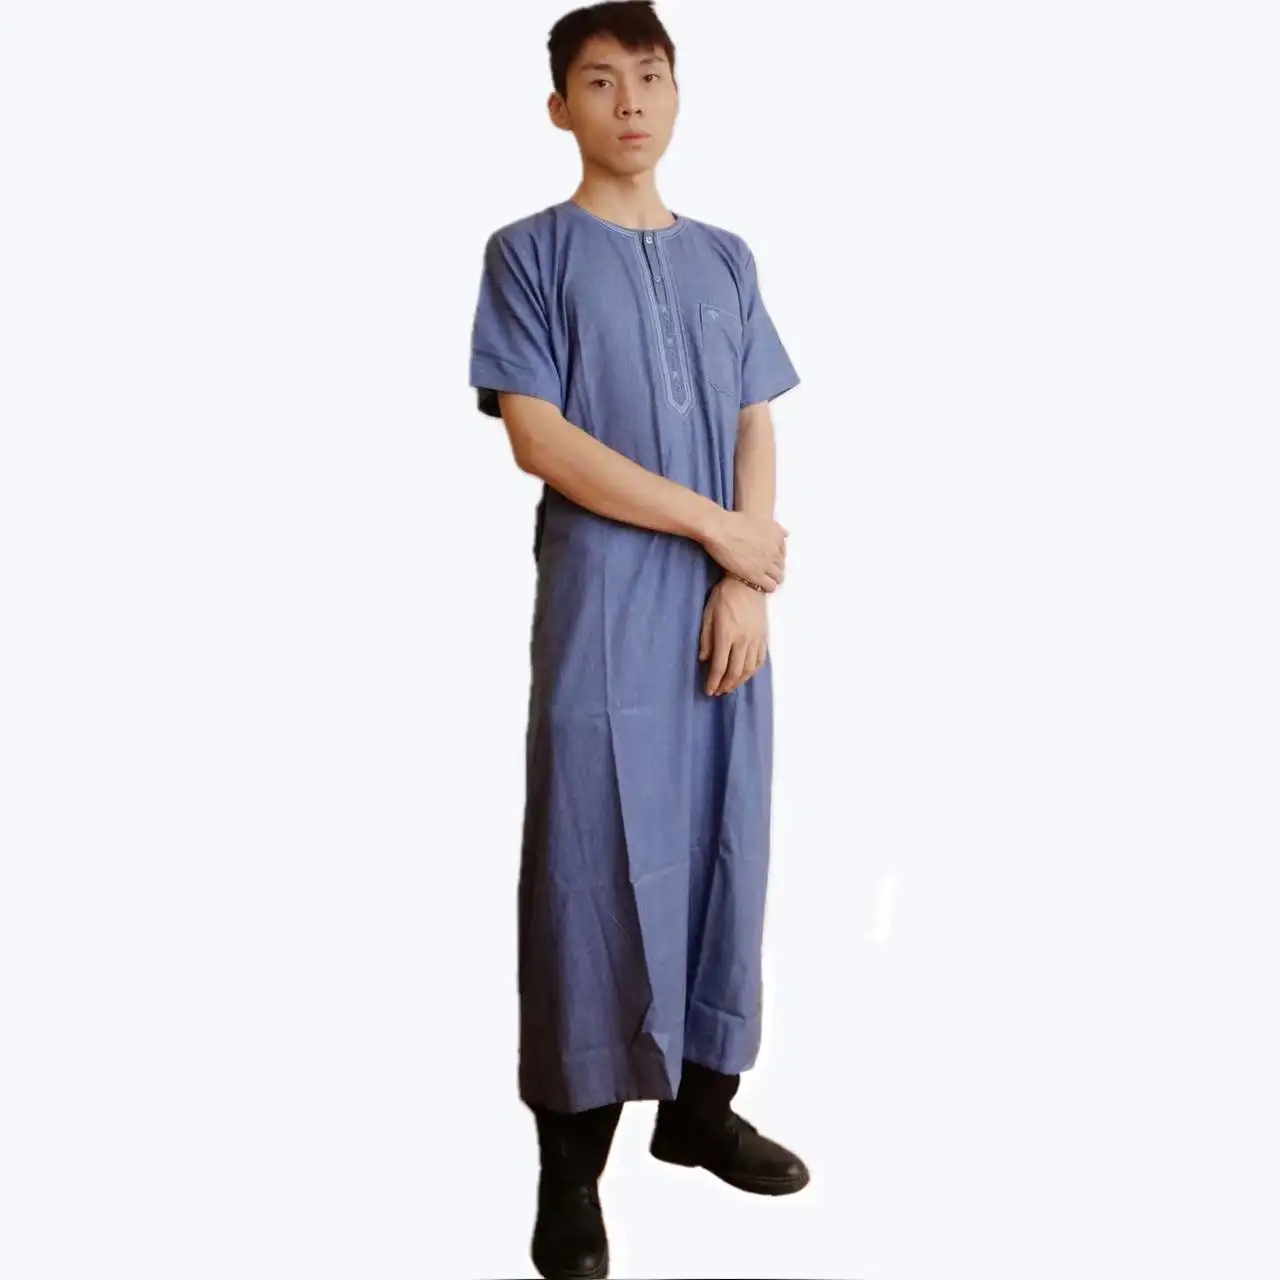 Pamuk islam erkek elbisesi erkek gençlik suudi arabistan tasarım uzun Thobe giyim müslüman erkek elbisesi